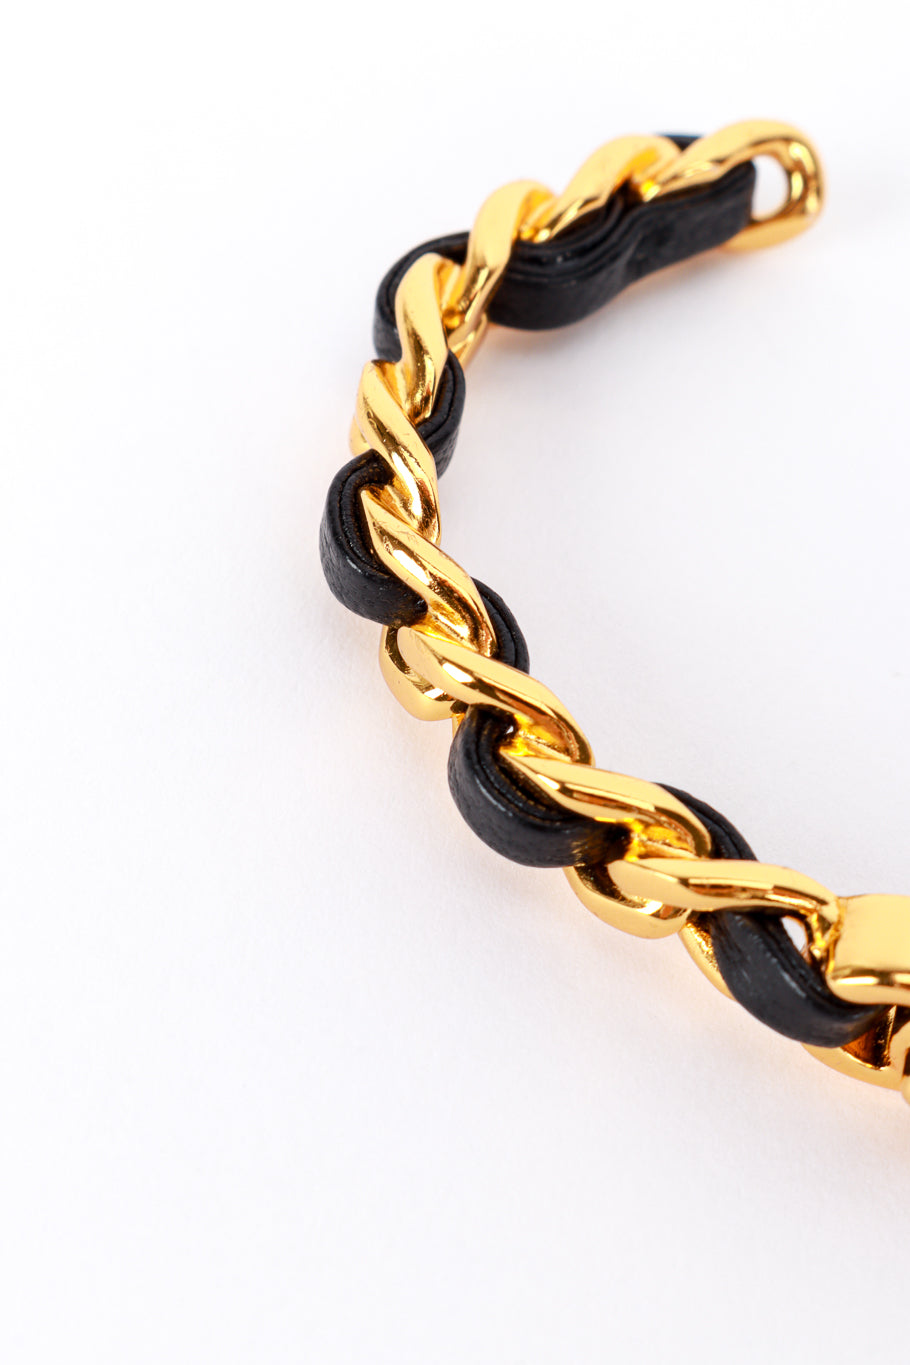 Chanel Woven Leather Chain Bangle chain closeup @recess la